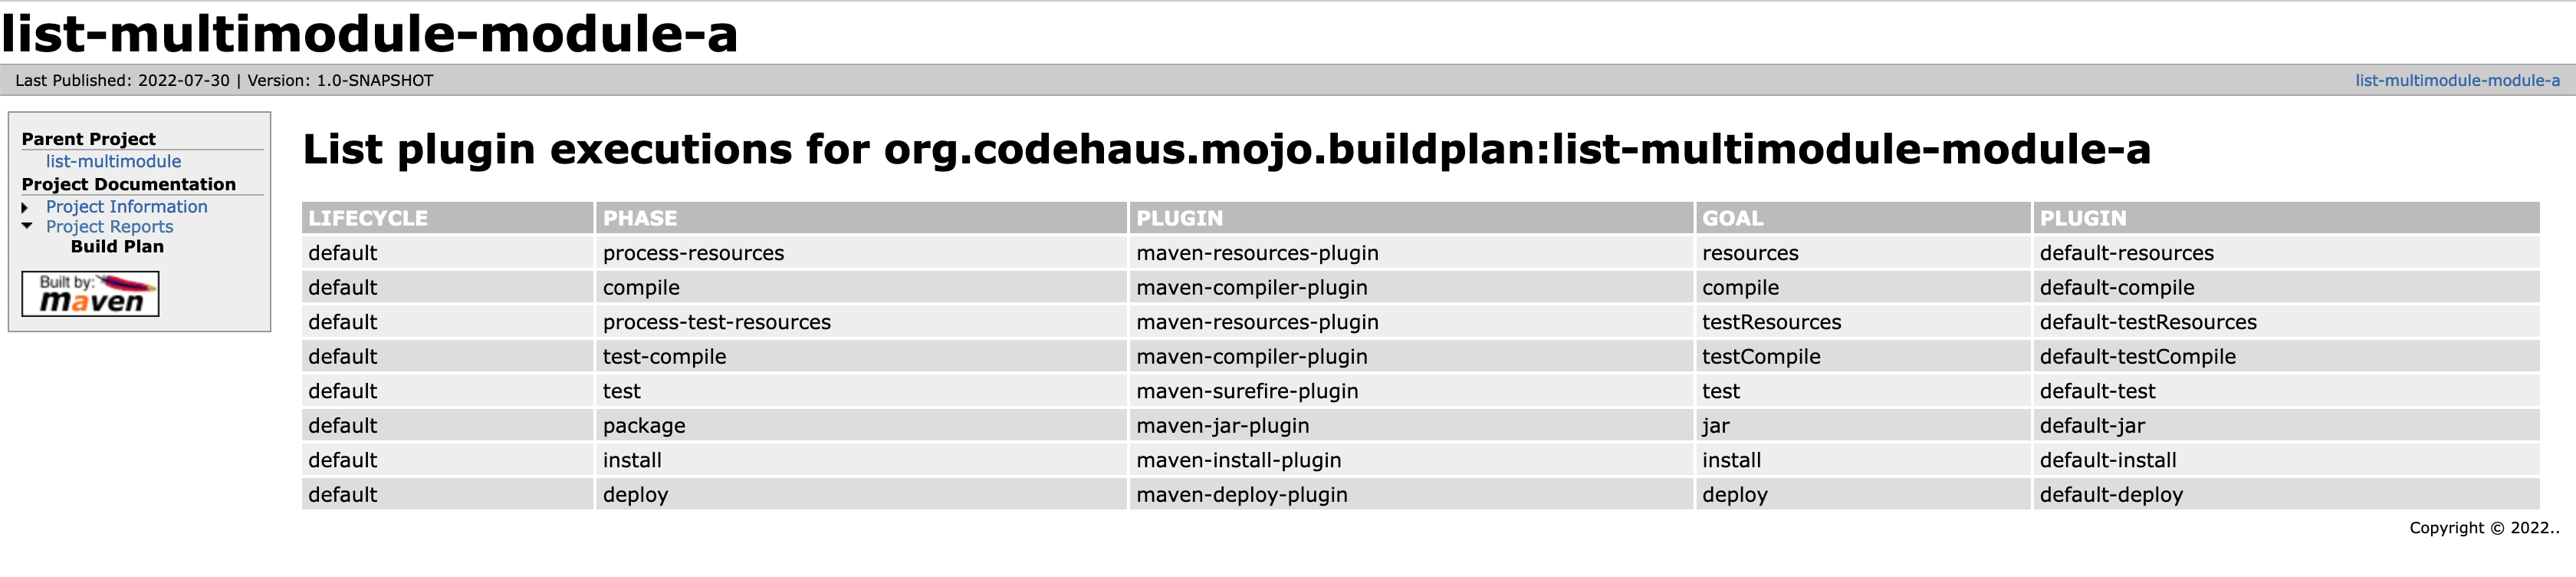 buildplan report example